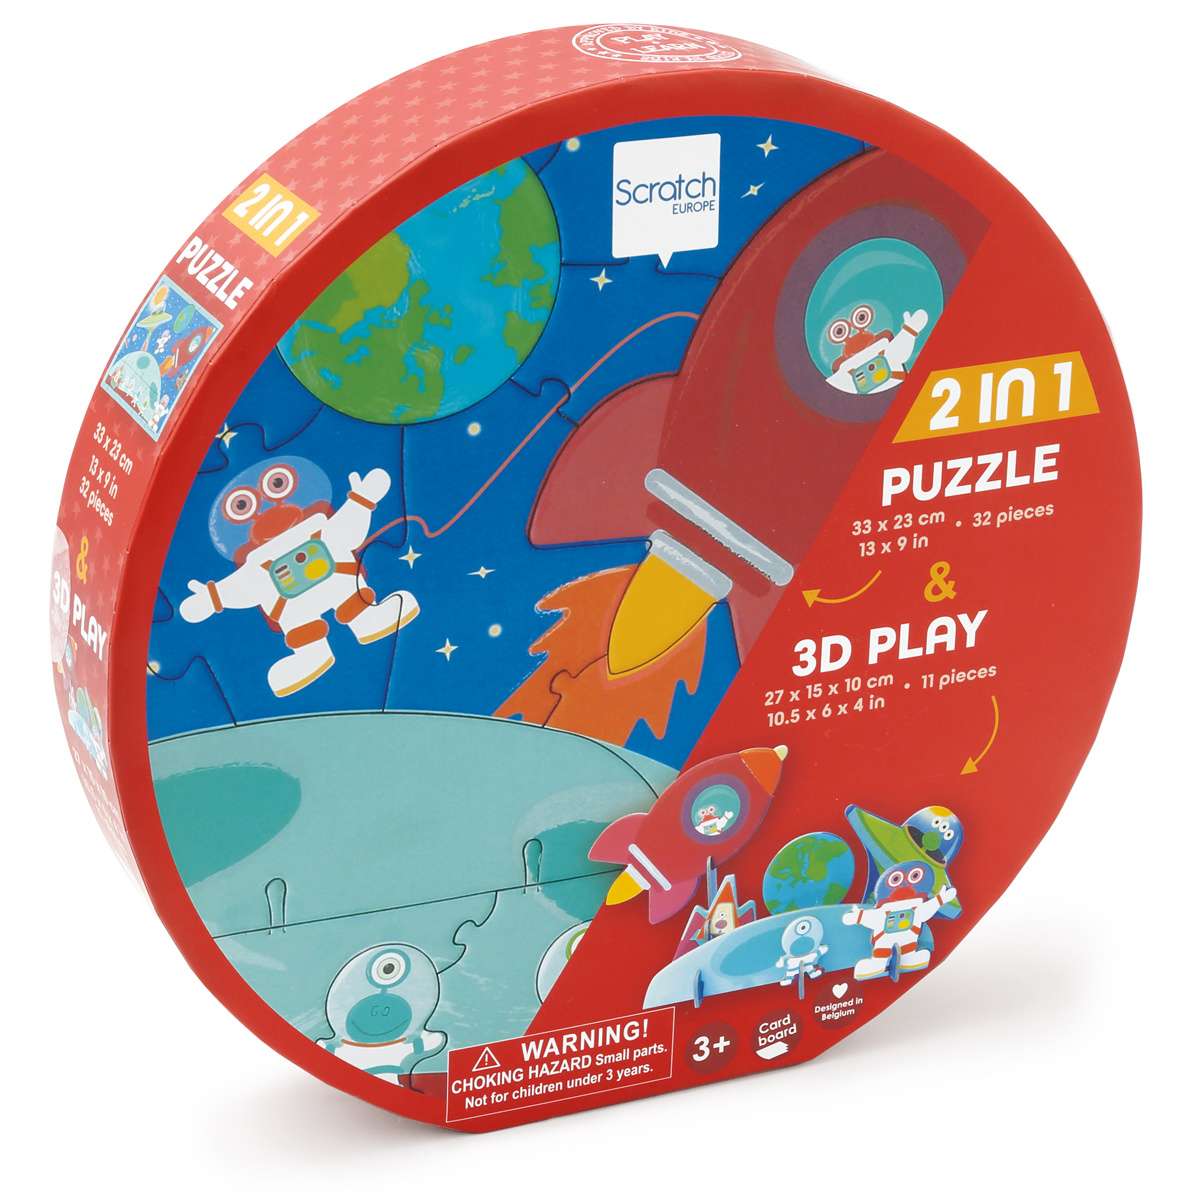 Ontvangst verhaal huurling 2 in 1 puzzel en 3D spel Ruimte - Mink & Moon